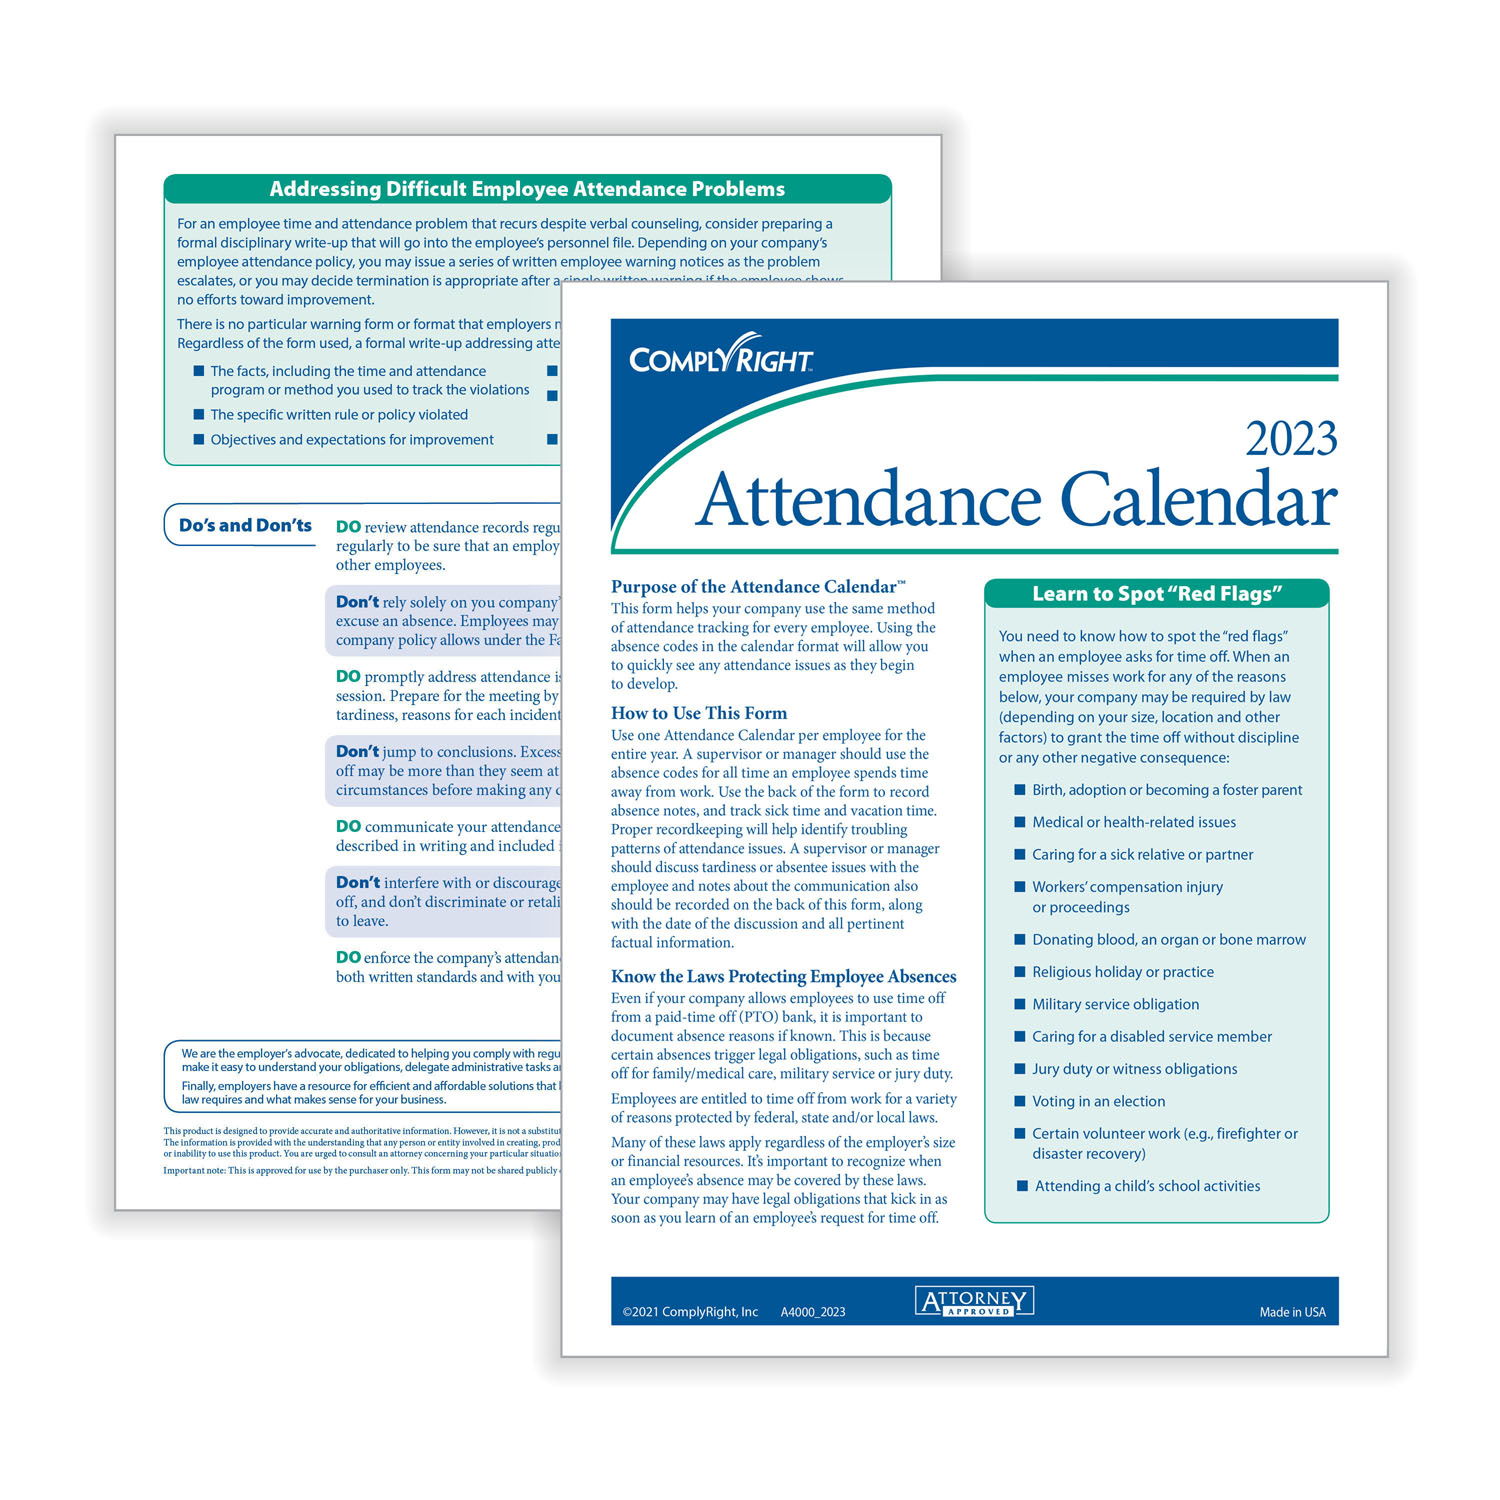 ComplyRightDealer | 2023 Attendance Calendar Kit, Pack of 25